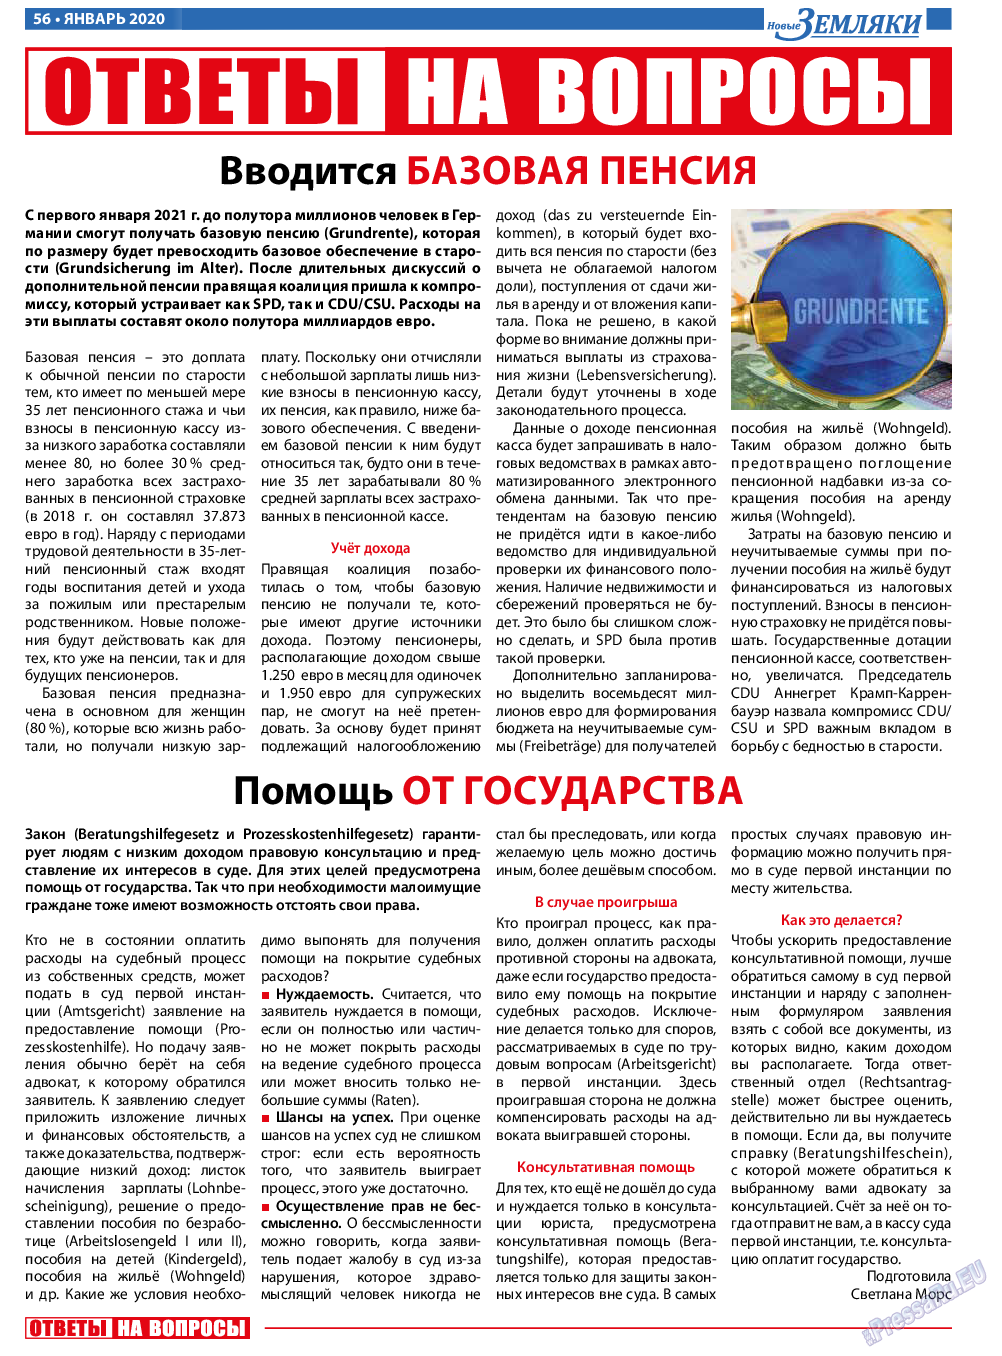 Новые Земляки (газета). 2020 год, номер 1, стр. 56